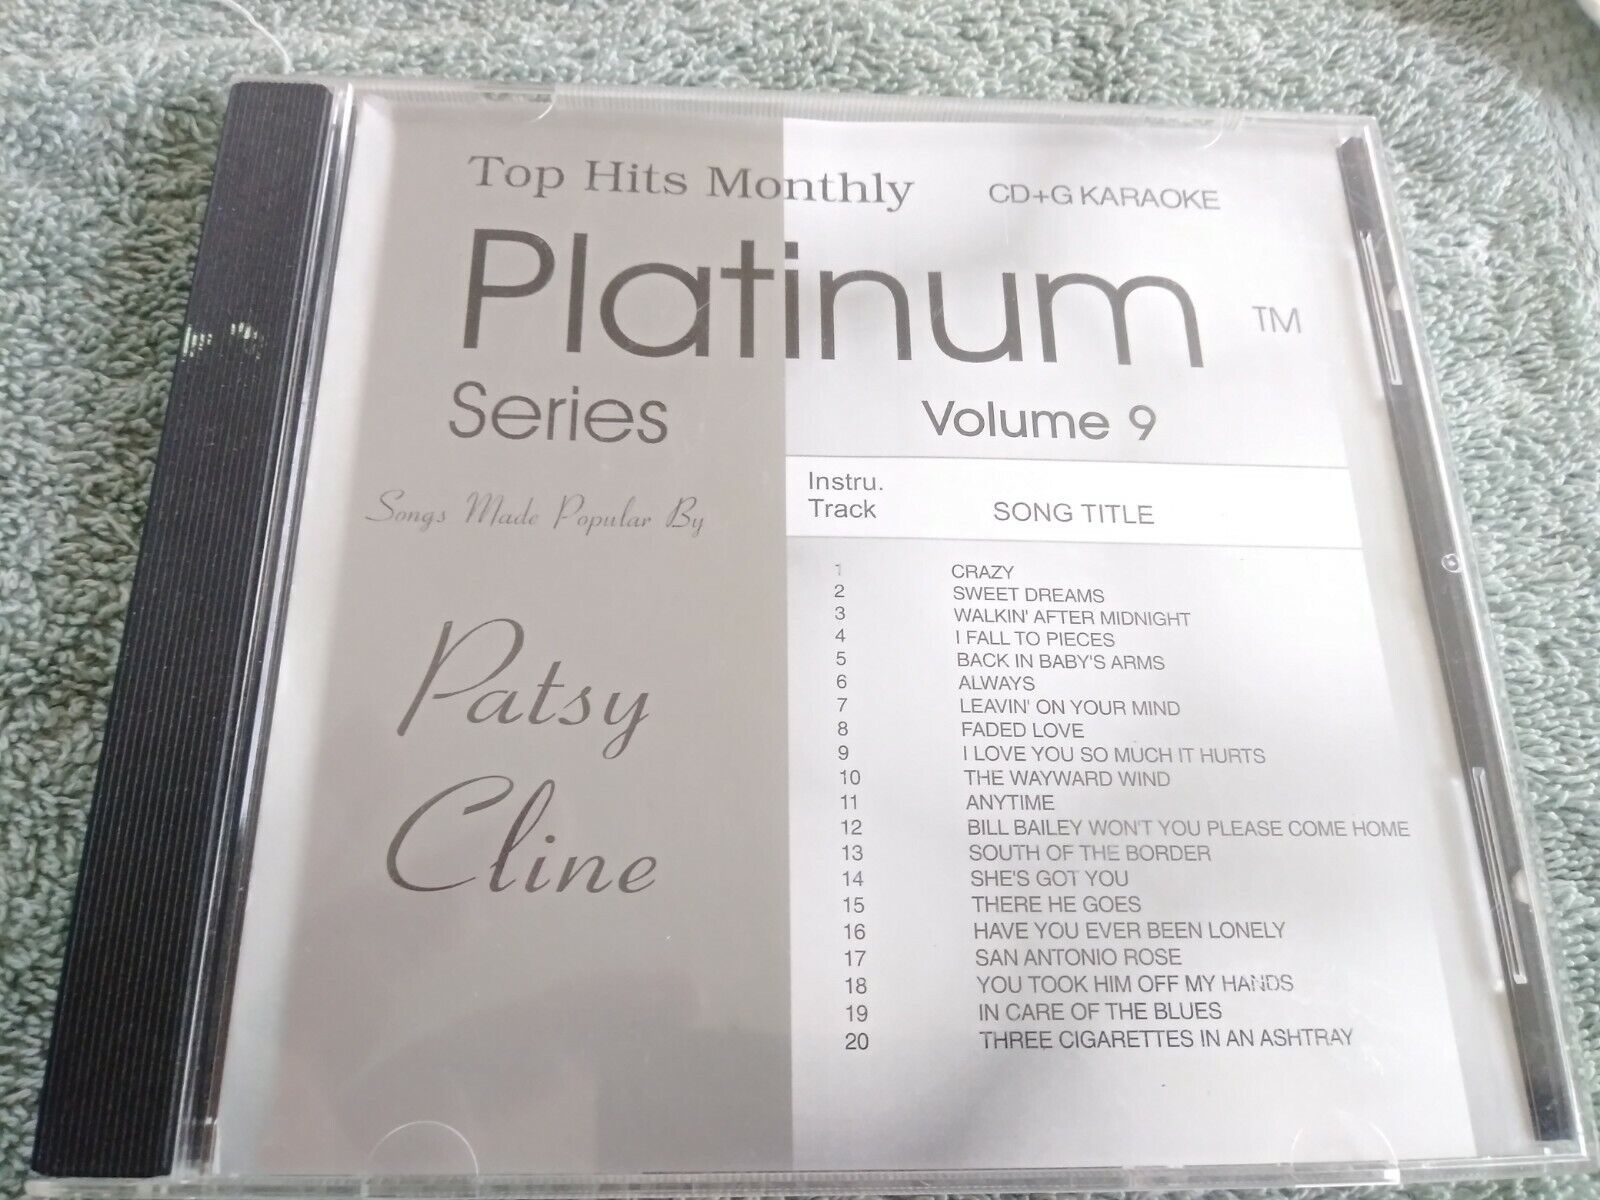 Top Hits Monthly Karaoke Platinum Series CDG Vol. 9